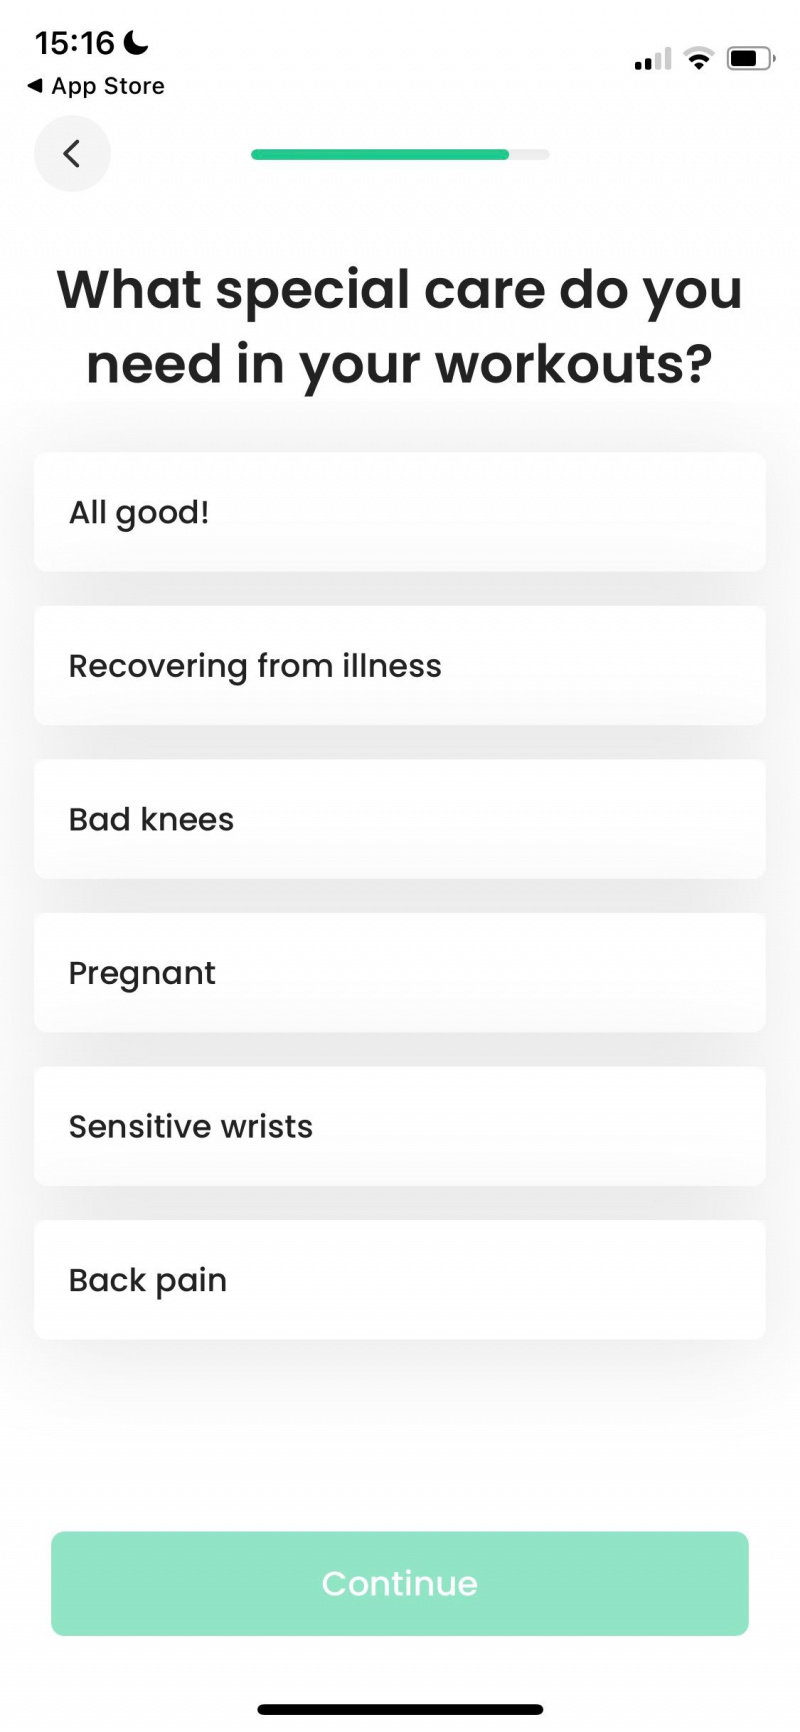   Zrzut ekranu aplikacji 7M Workout przedstawiający pytania dotyczące specjalnej troski przed ćwiczeniami